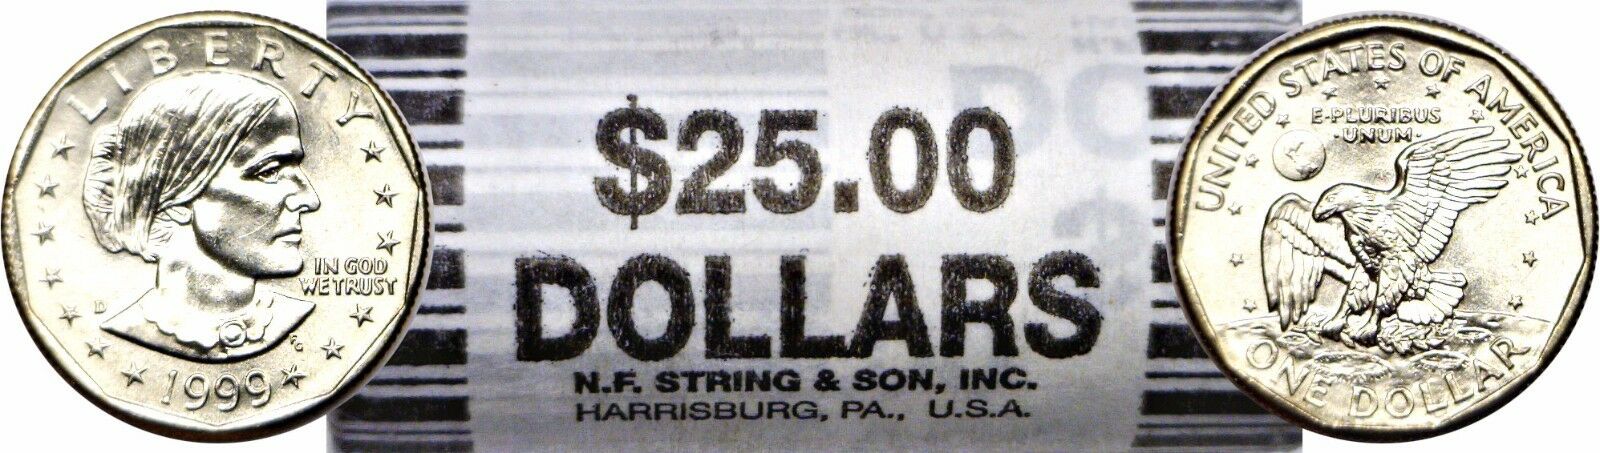 1999-d Bu $1 Susan B. Anthony Original $25 Face Bank Wrap Roll Stock Photo